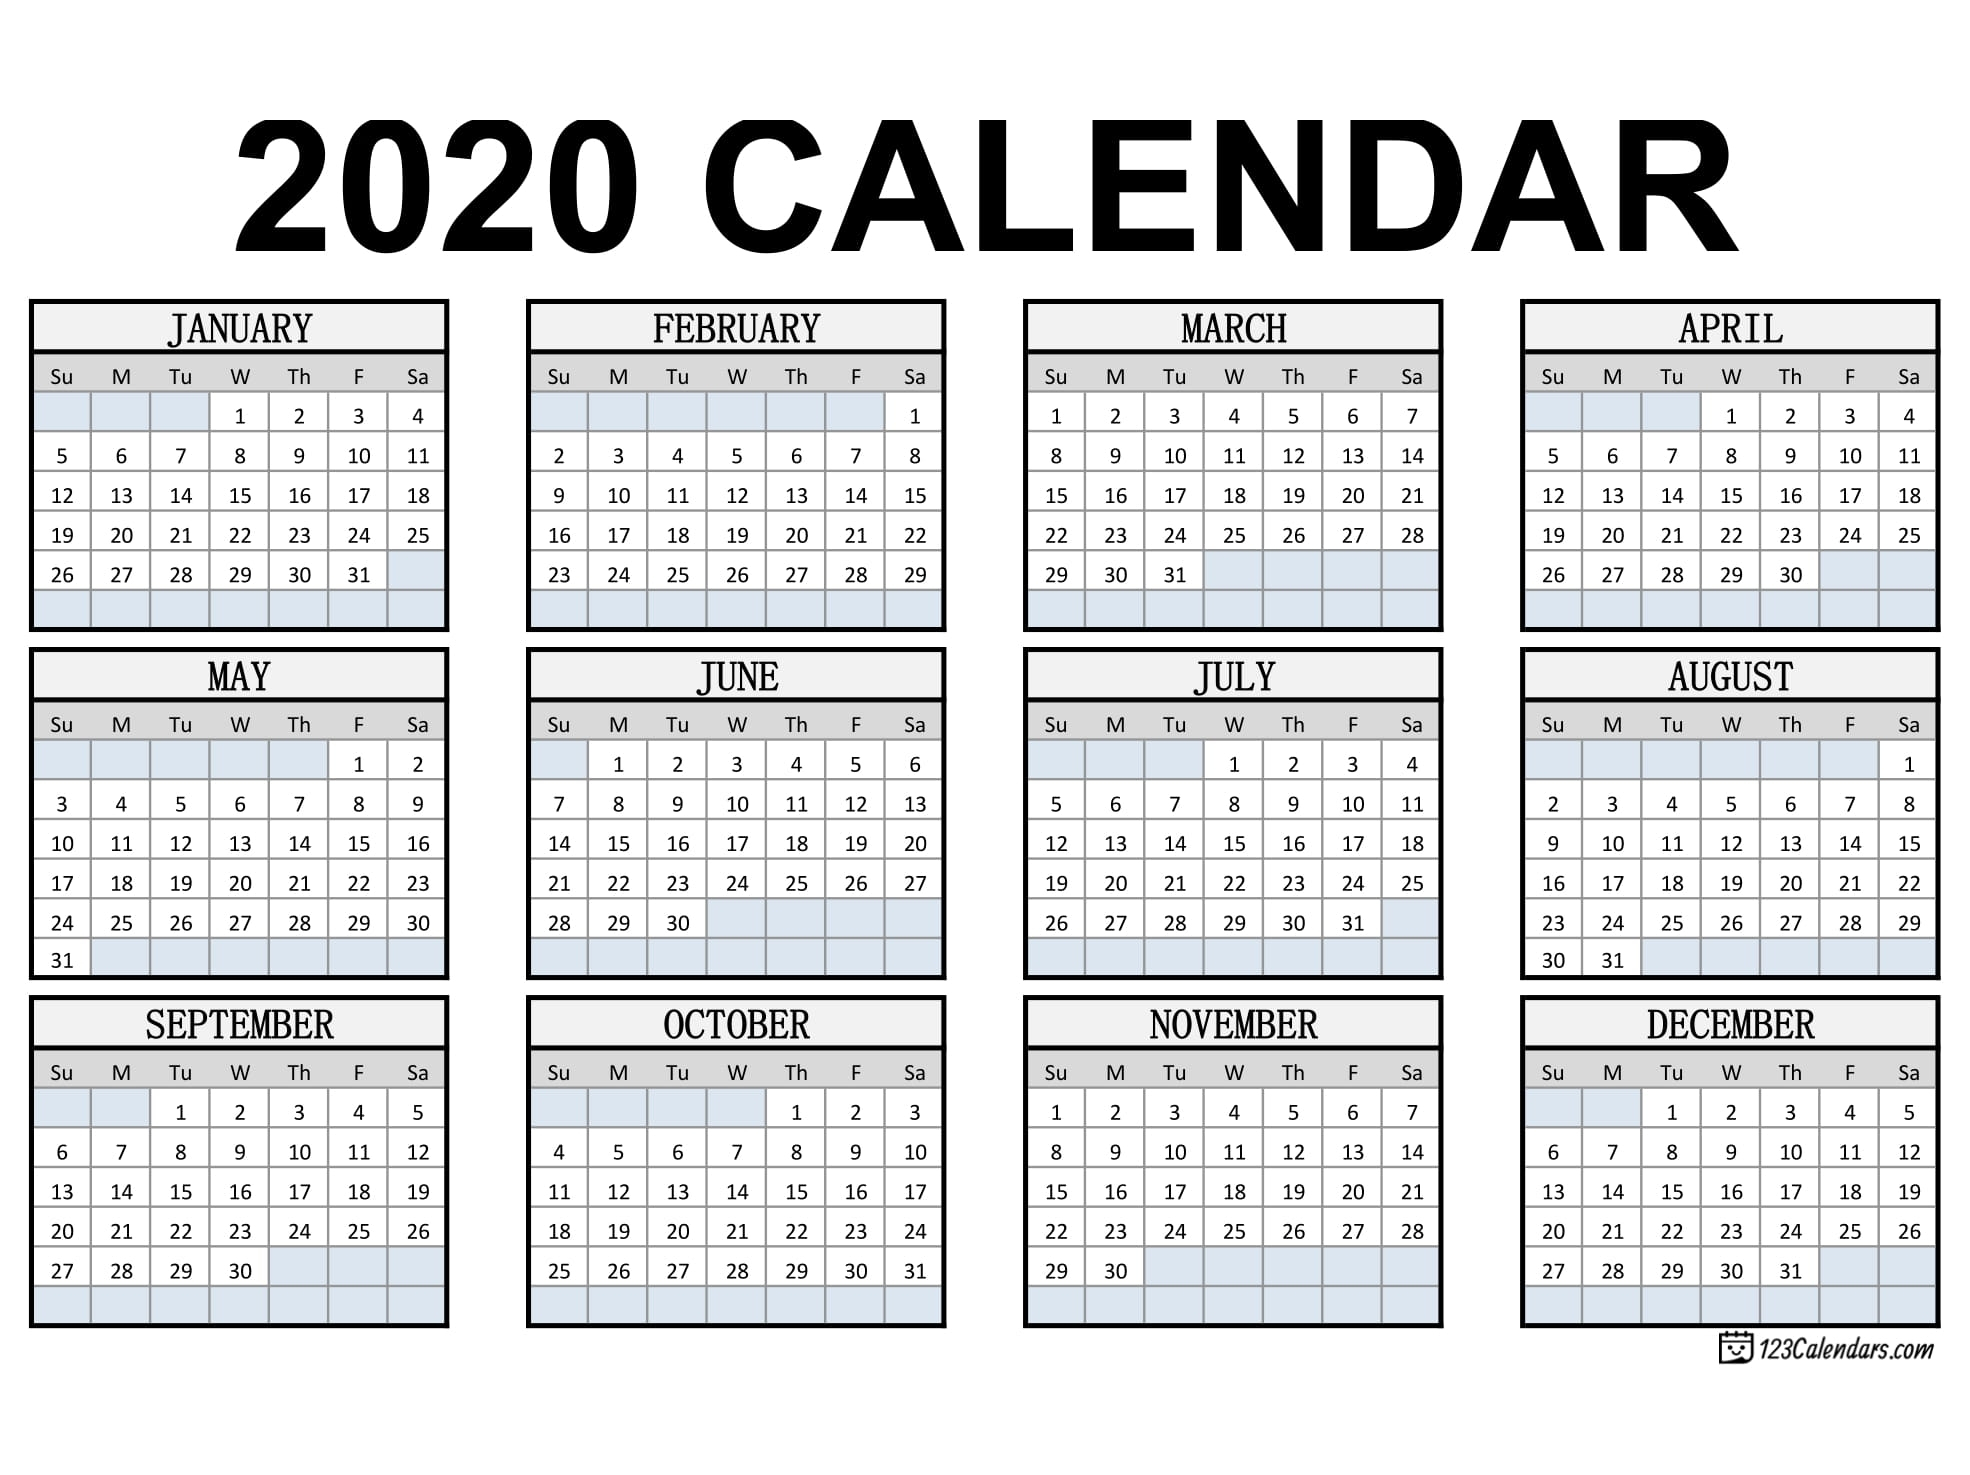 Pocket Size Monthly Calendar Printable Calendar Inspiration Design intended for Free Printable Pocket Calendar Template